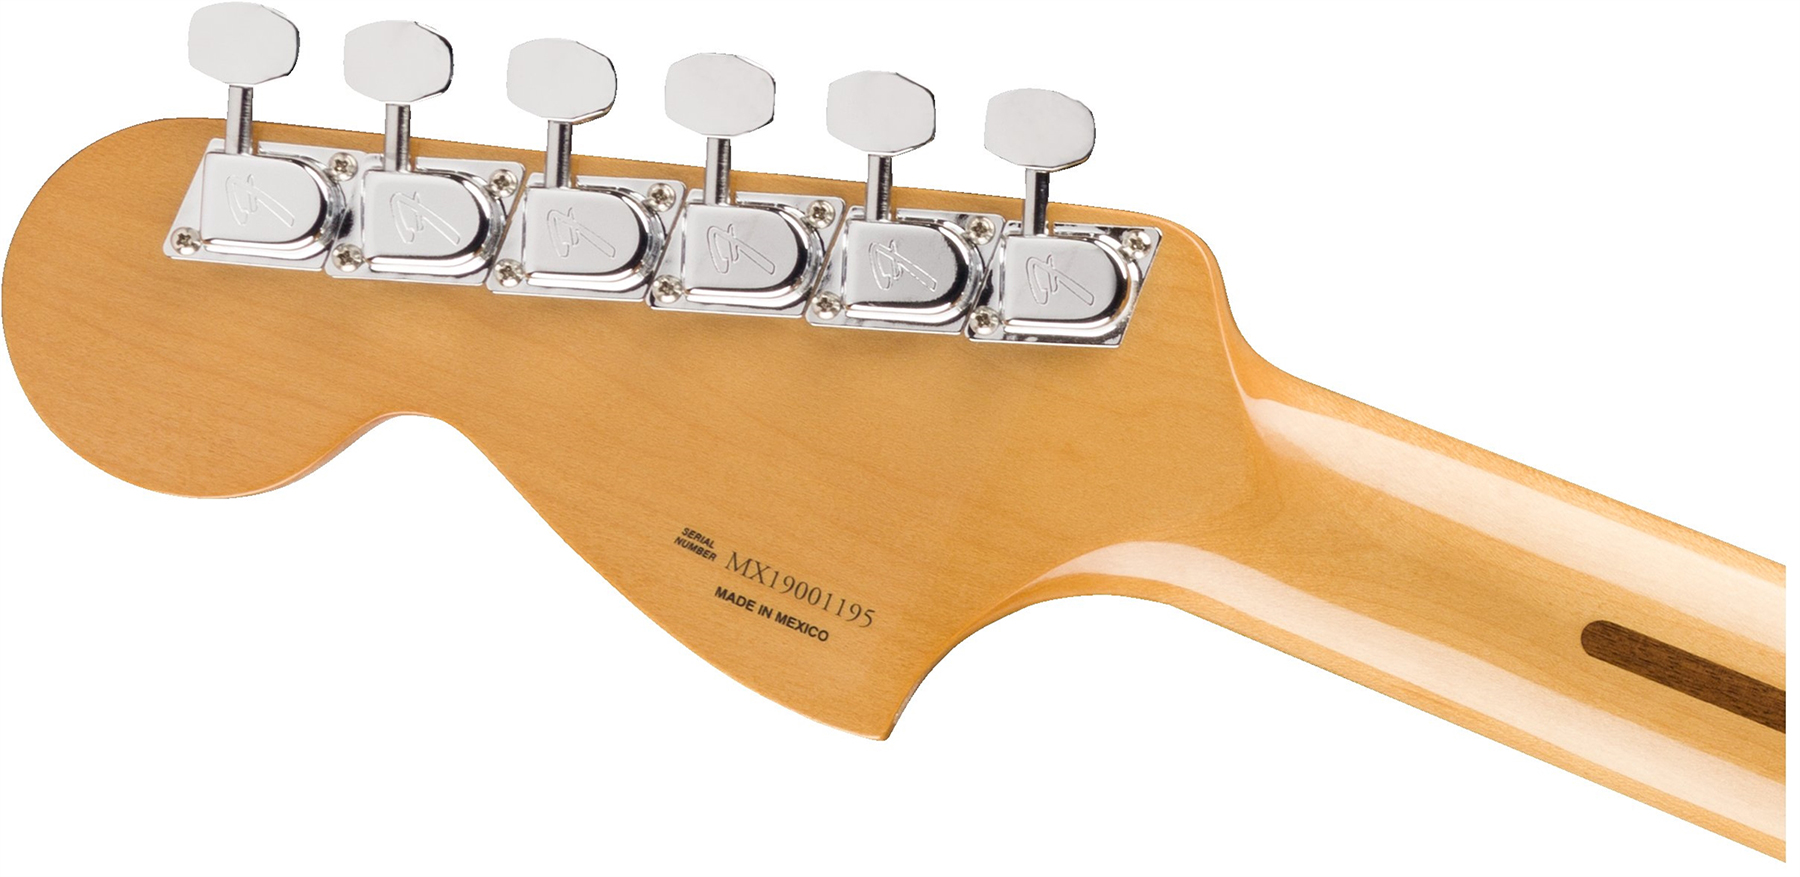 Fender Tele 70s Deluxe Vintera Vintage Mex Mn - Mocha - Guitarra eléctrica con forma de tel - Variation 3